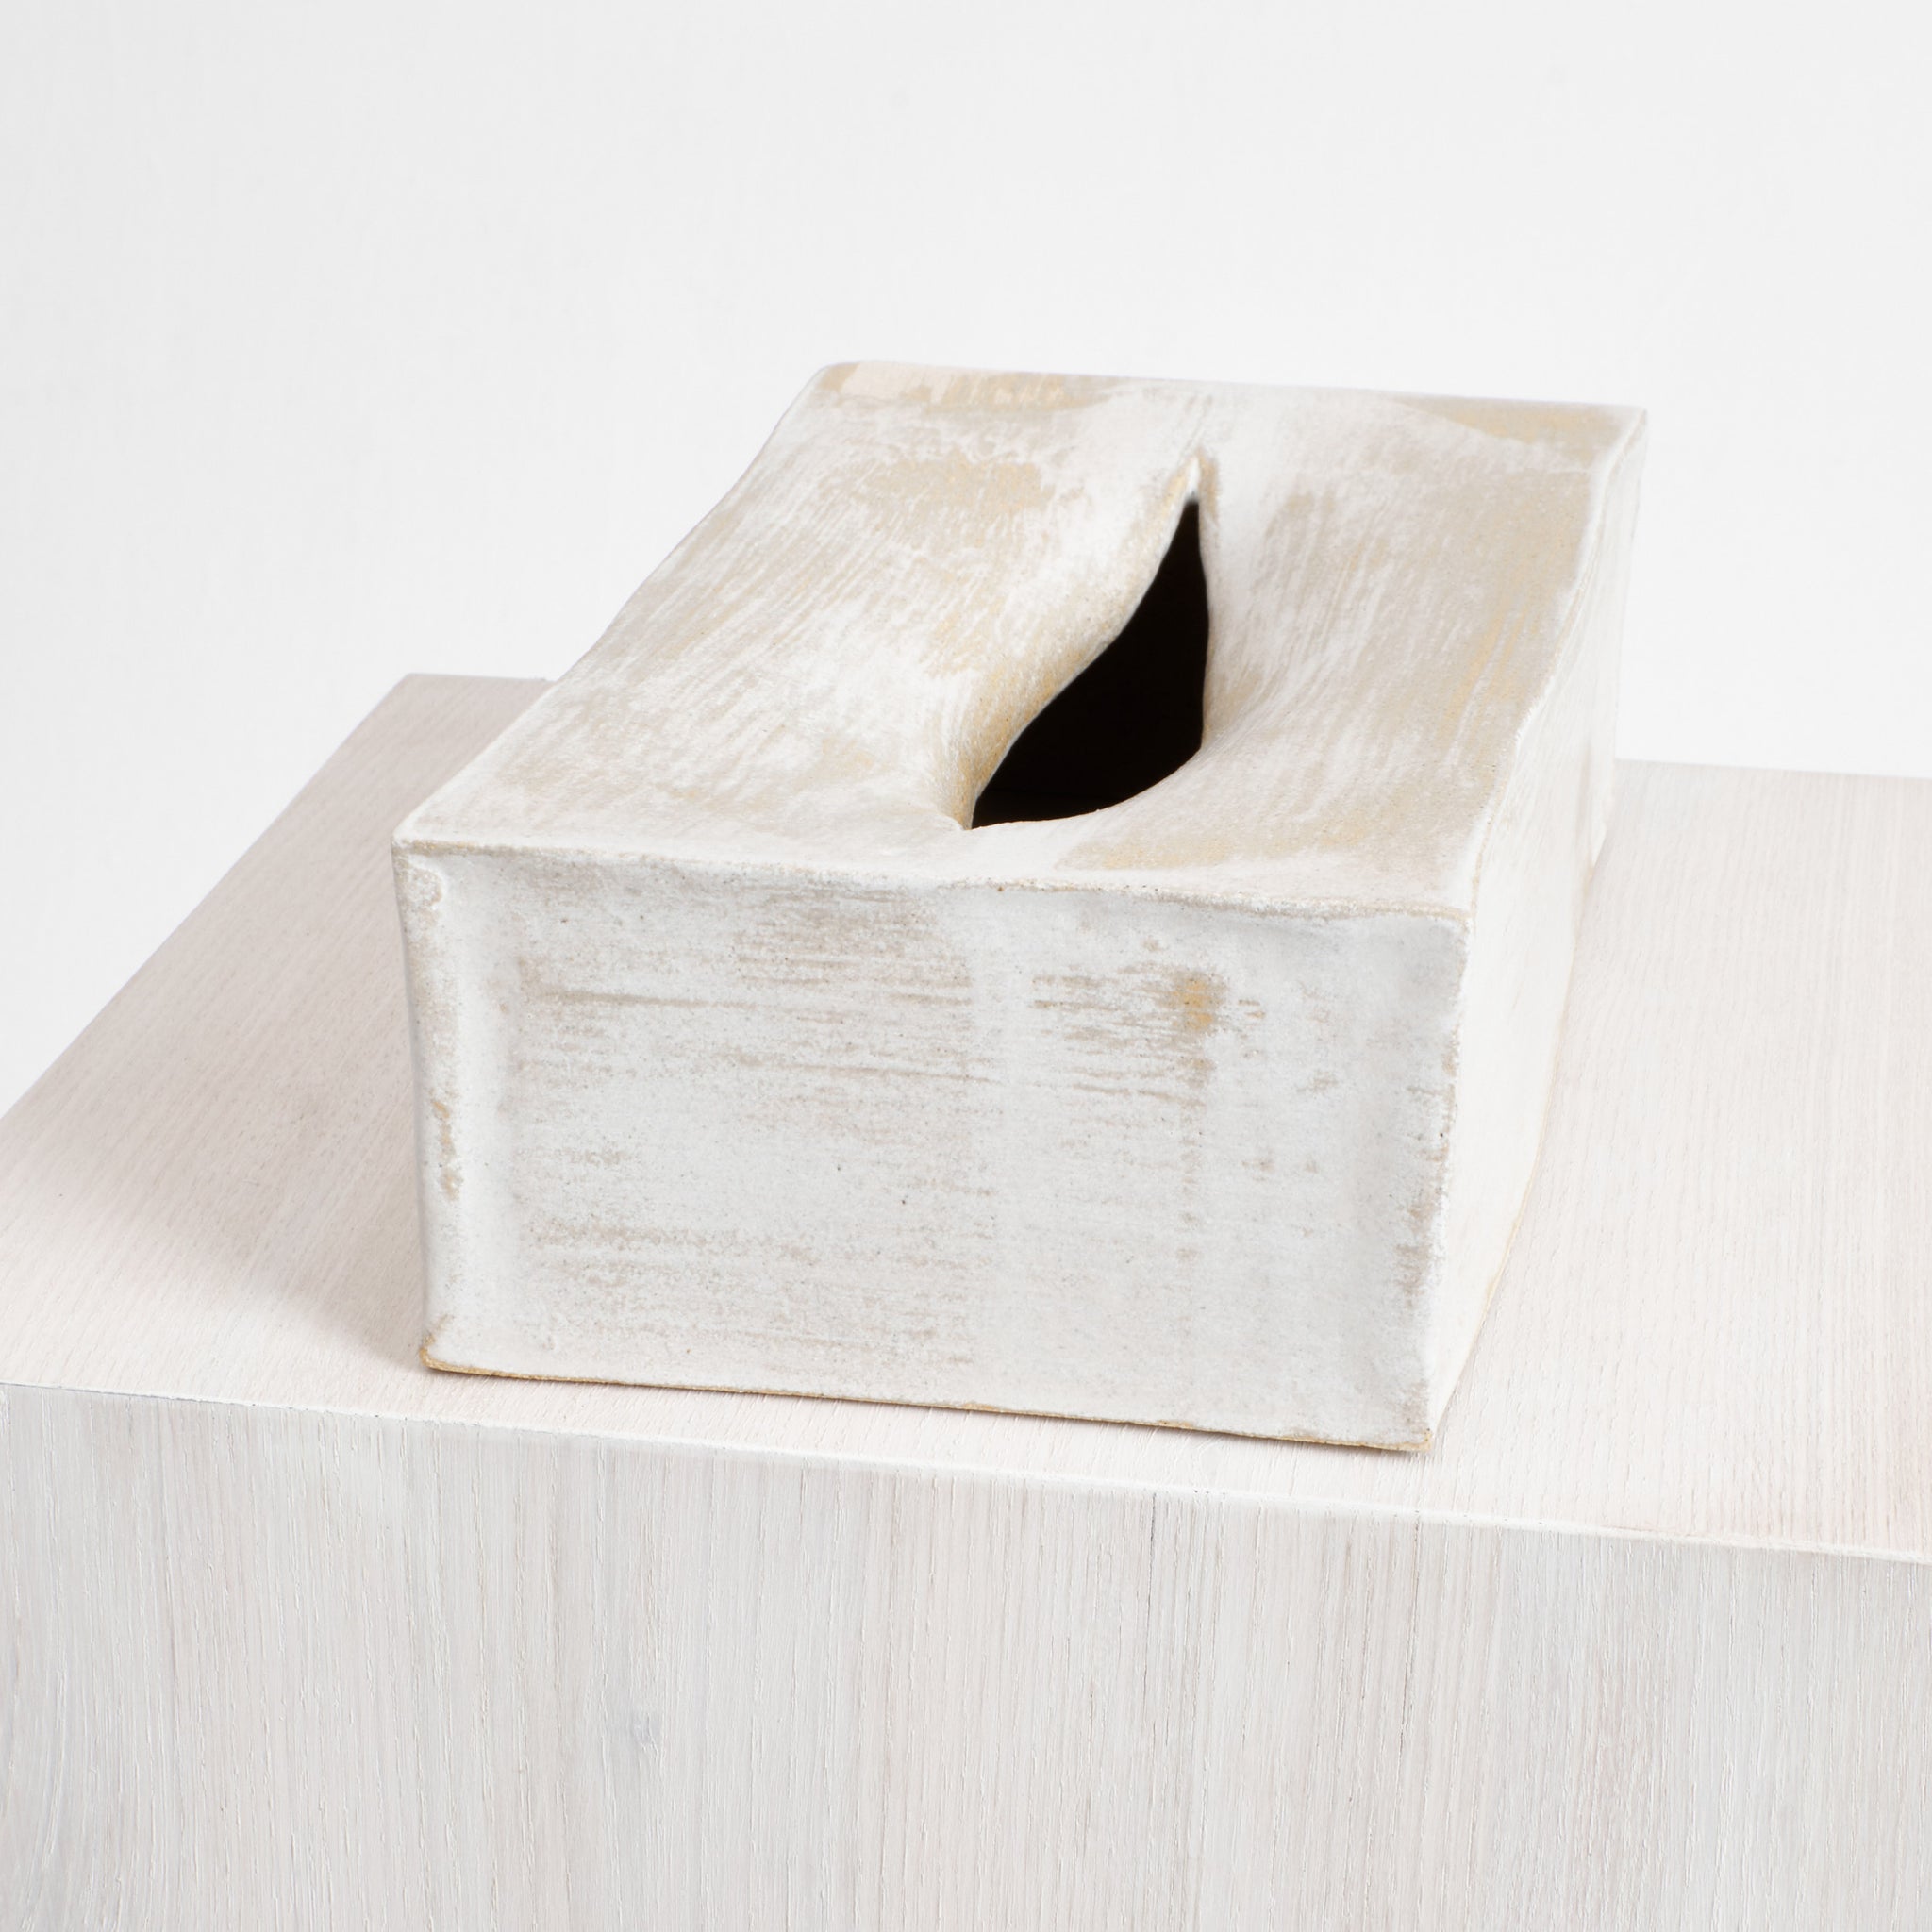 Ceramic Tissue Box – Project 213A